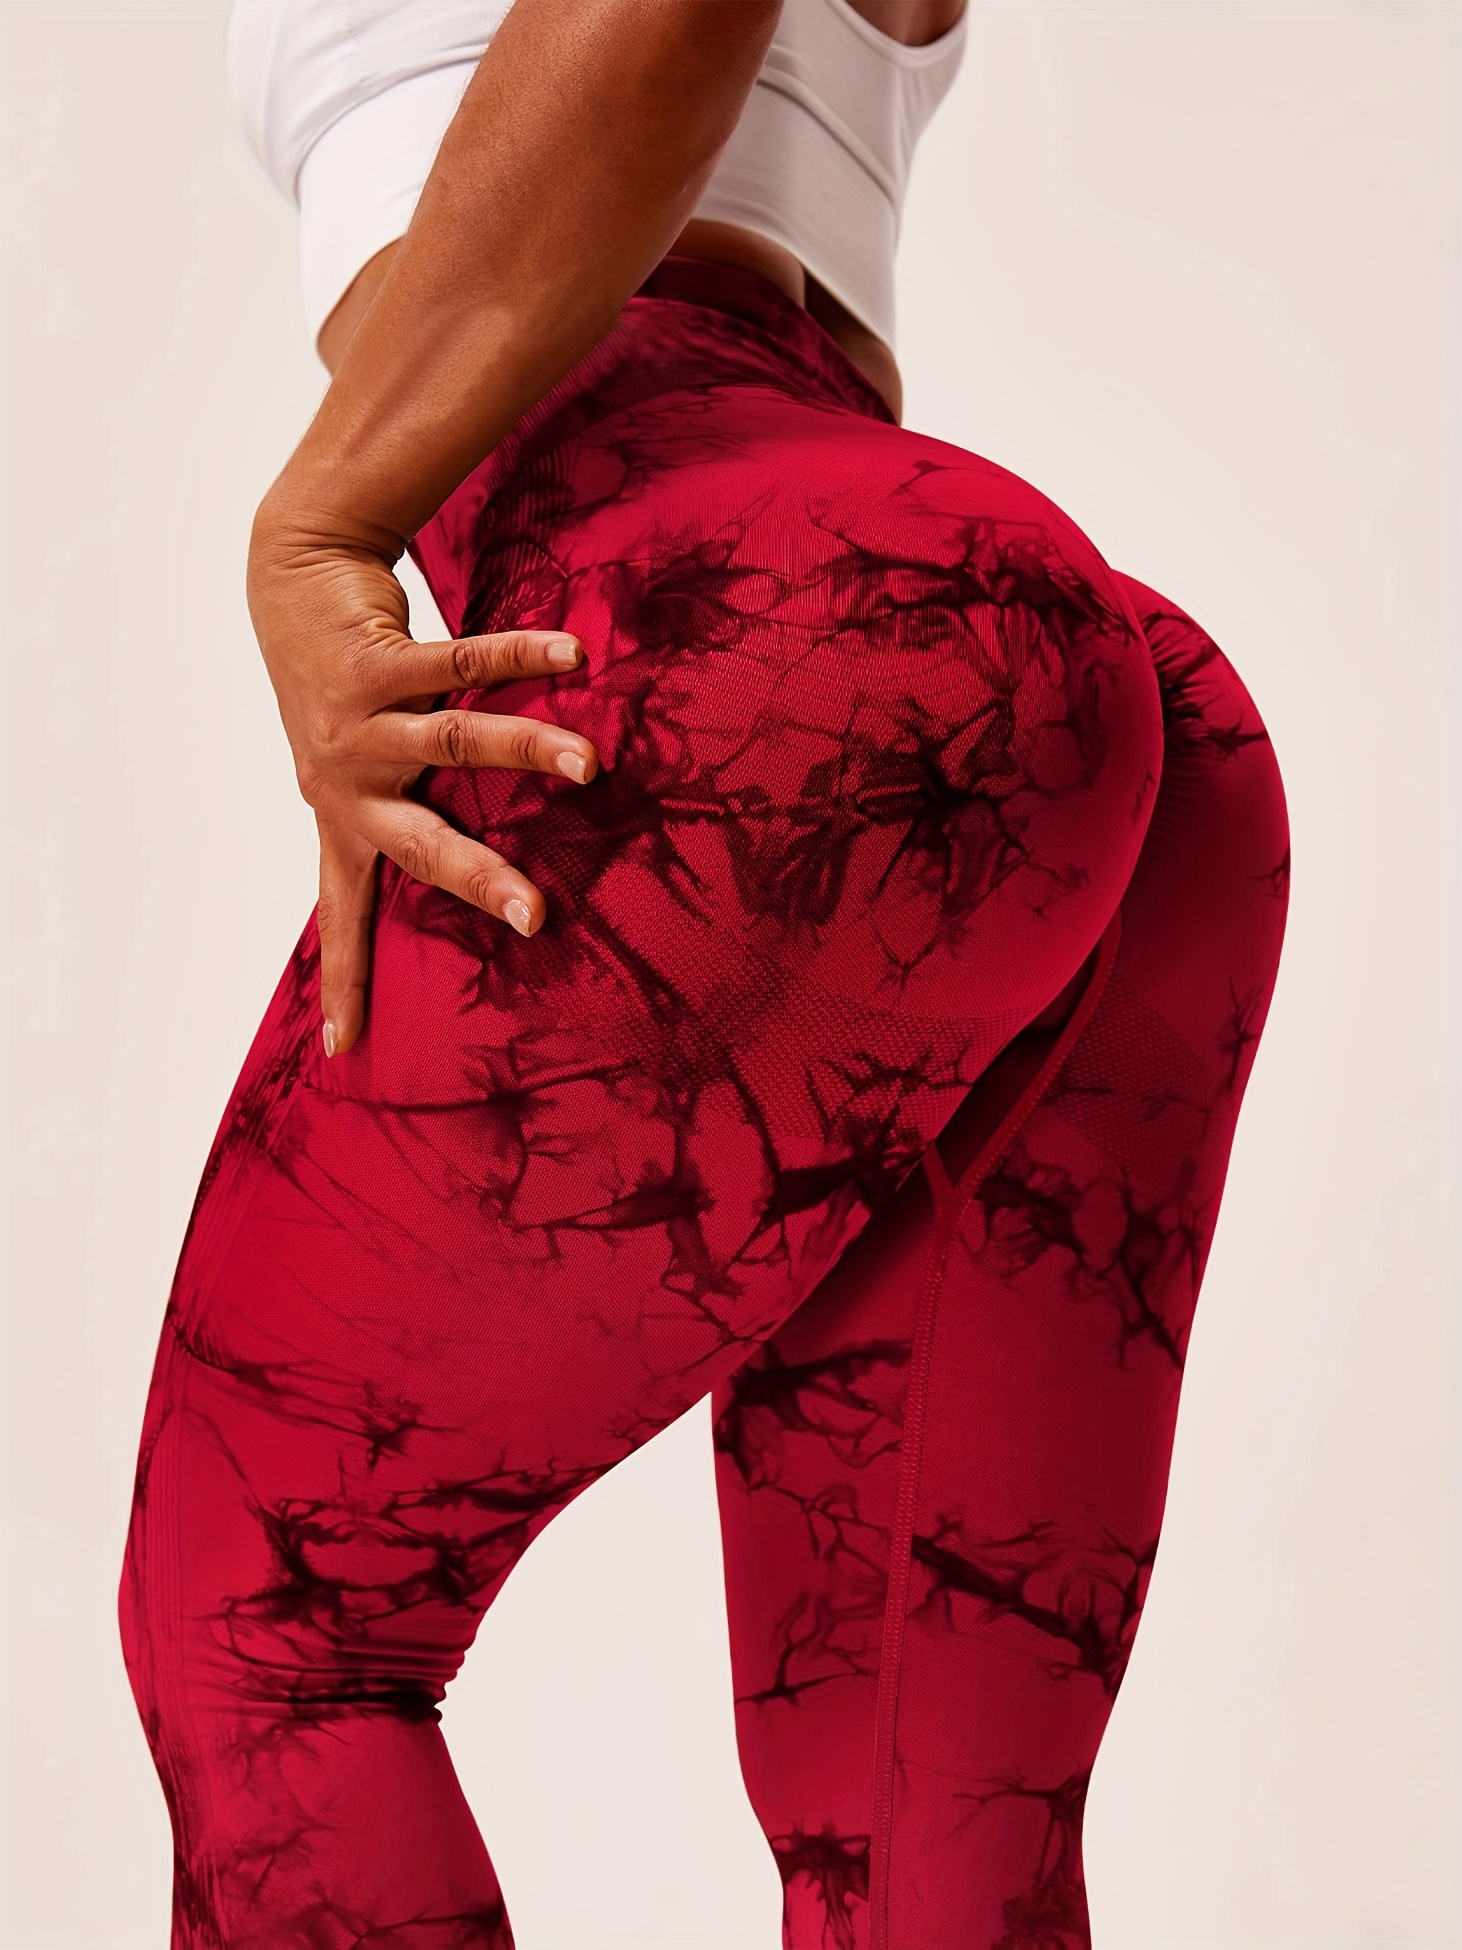 Hiworld Women's Seamless Yoga Pants Tie Dye Printed Trousers High